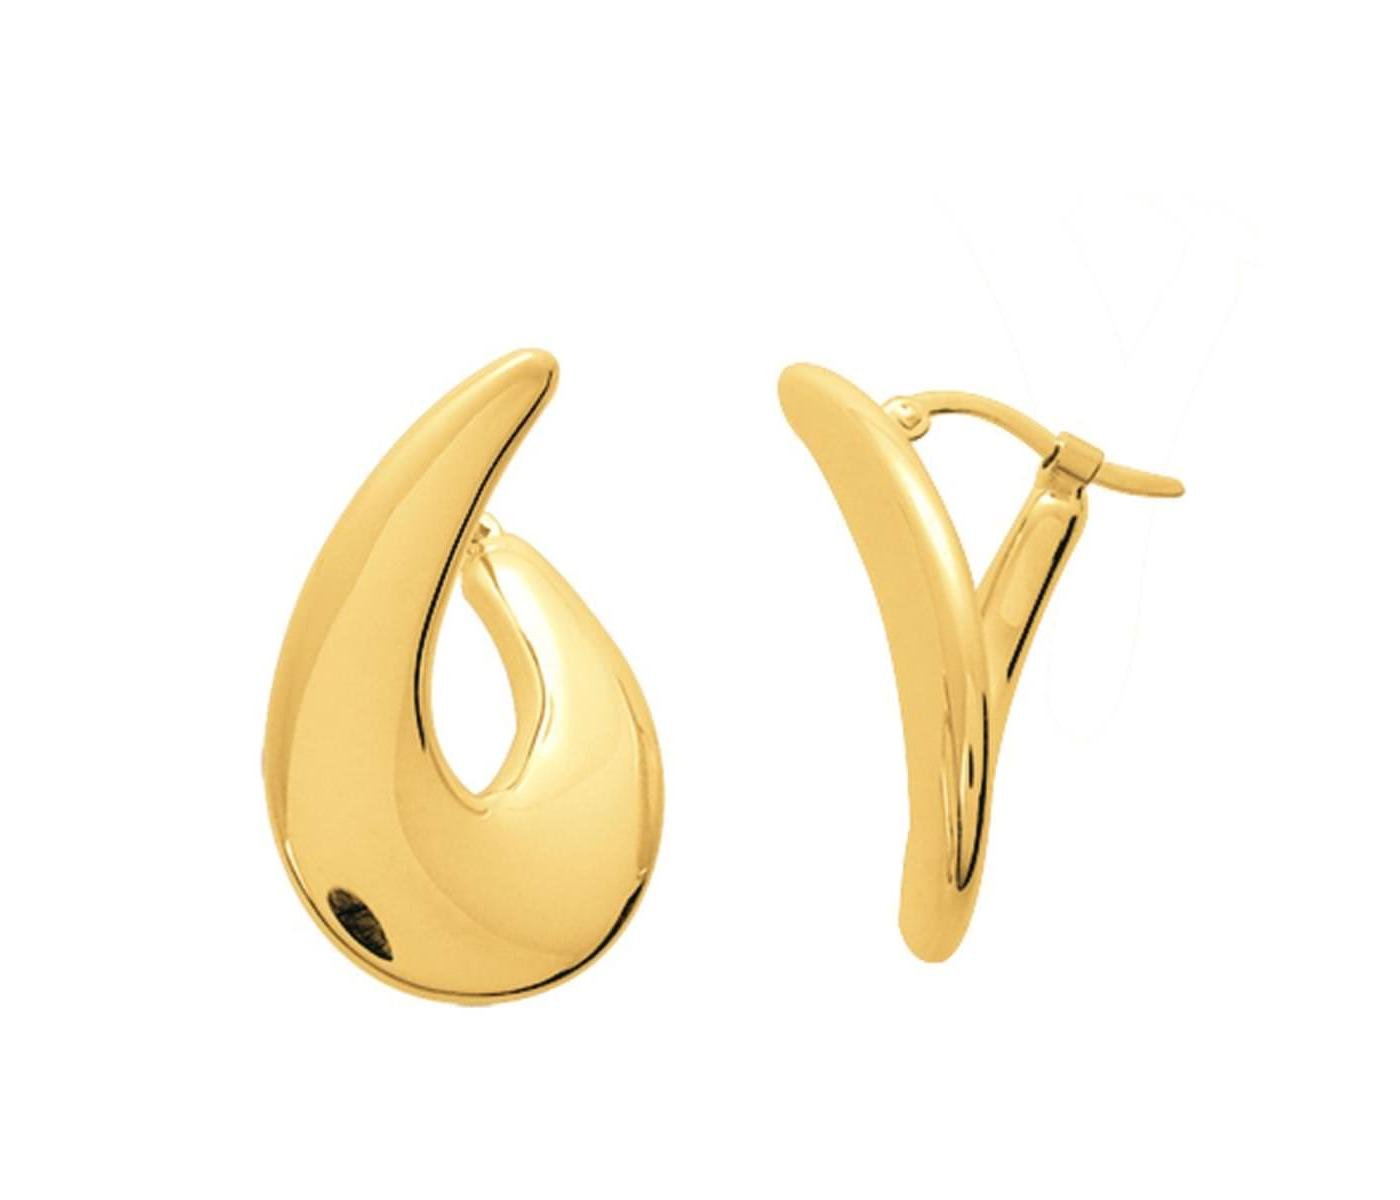 Earrings by Masviel